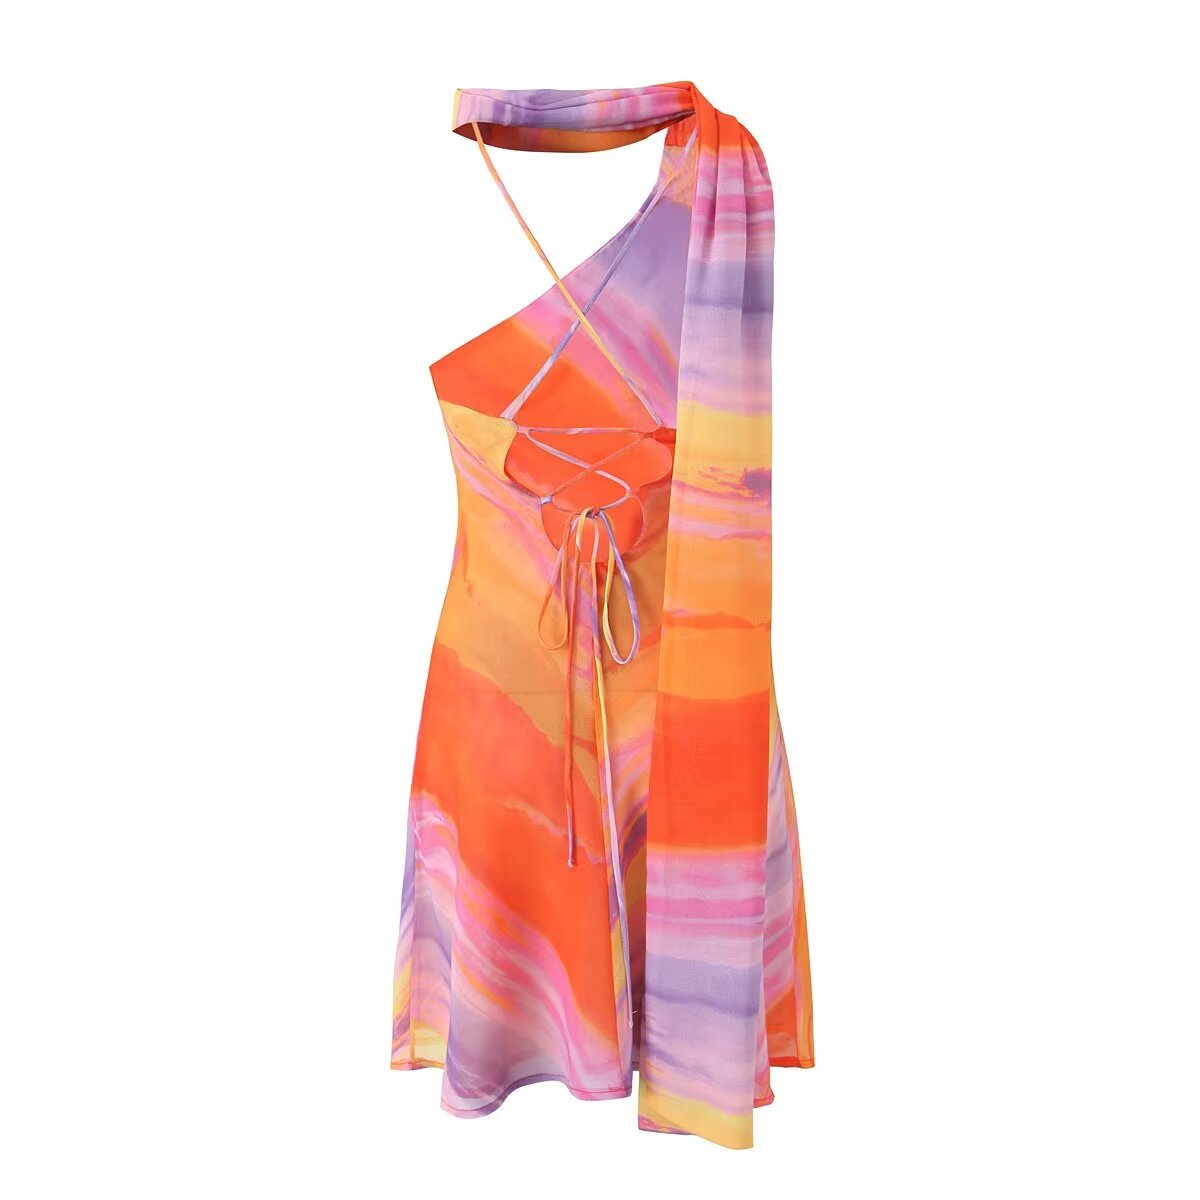 Dress: Light Chiffon Printed Dress